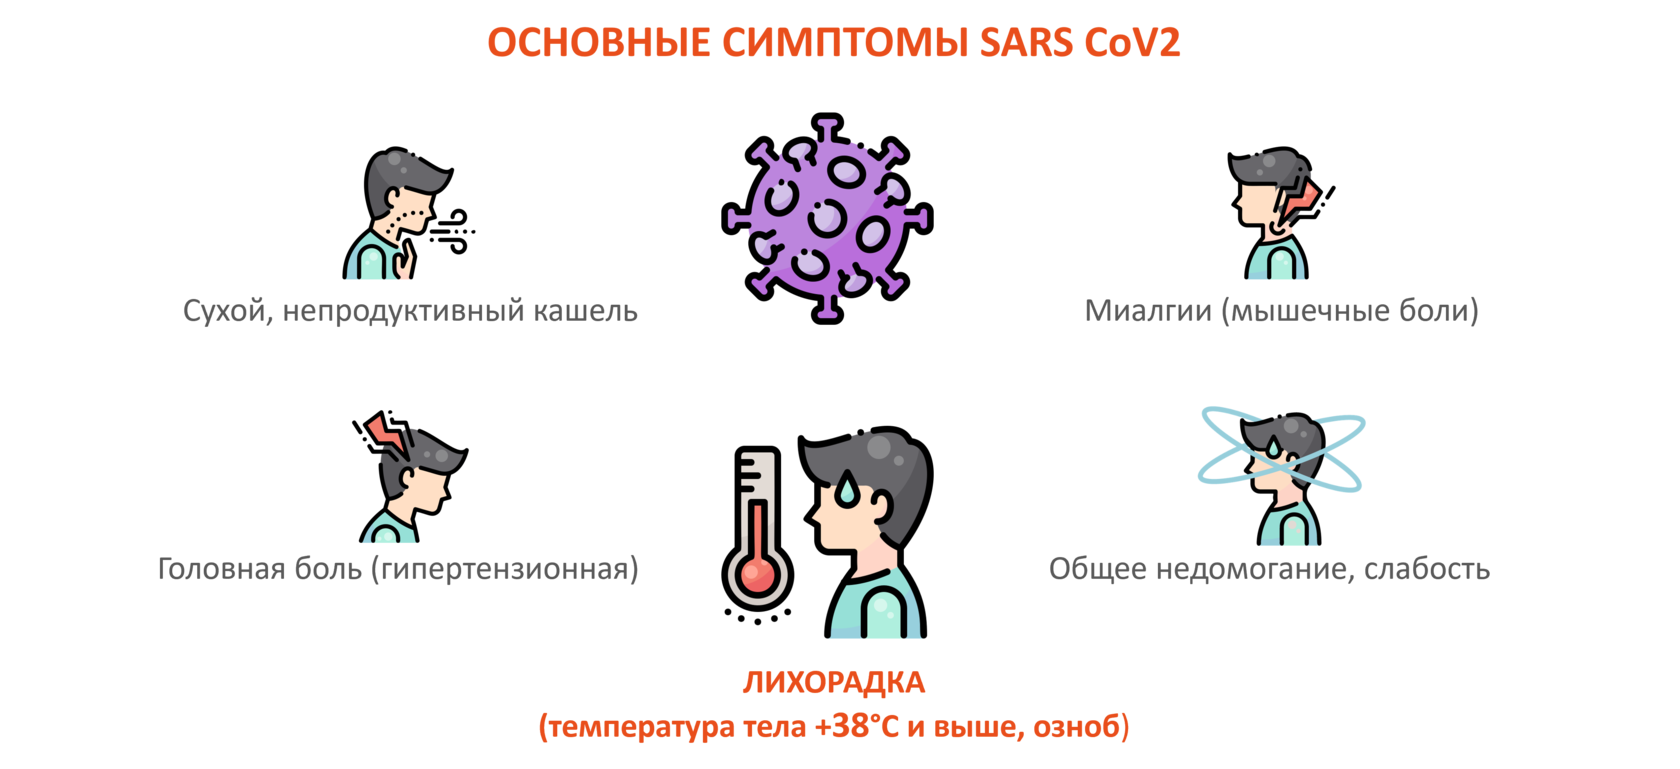 основные симптомы ковид 19 коронавируса COVID covid19 кашель мышечные боли головные боли лихорадка высокая температура сухой кашель